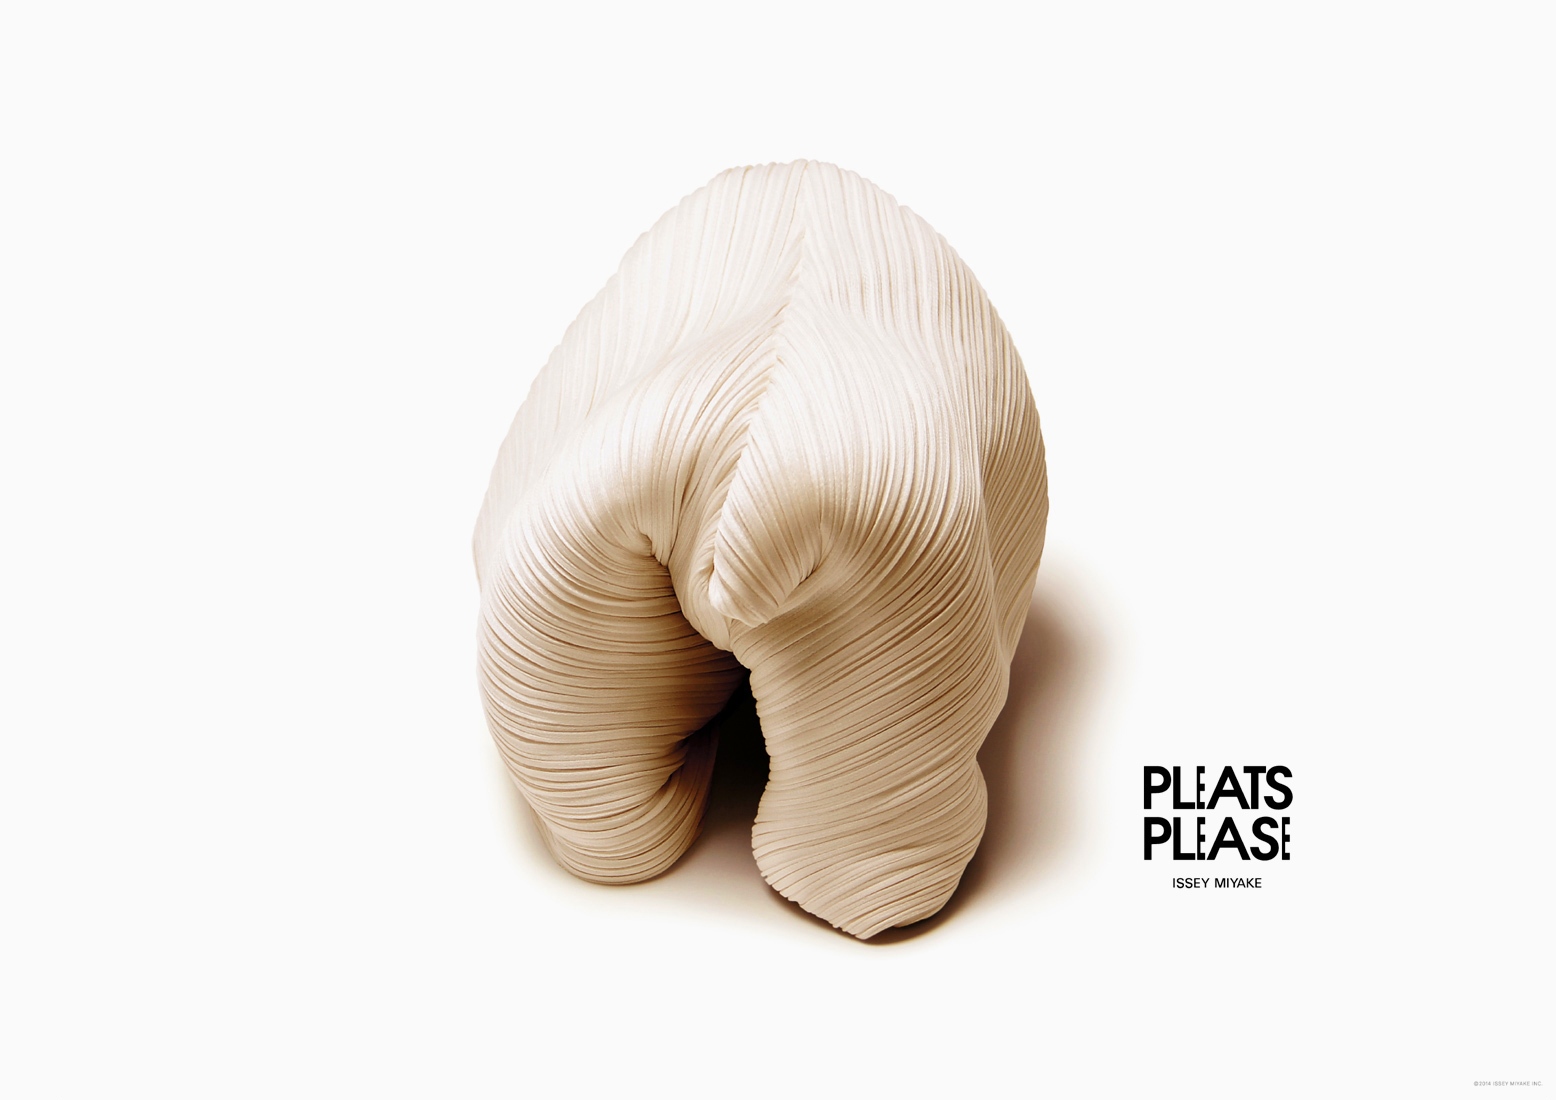 pleats-please-animals-2015-06